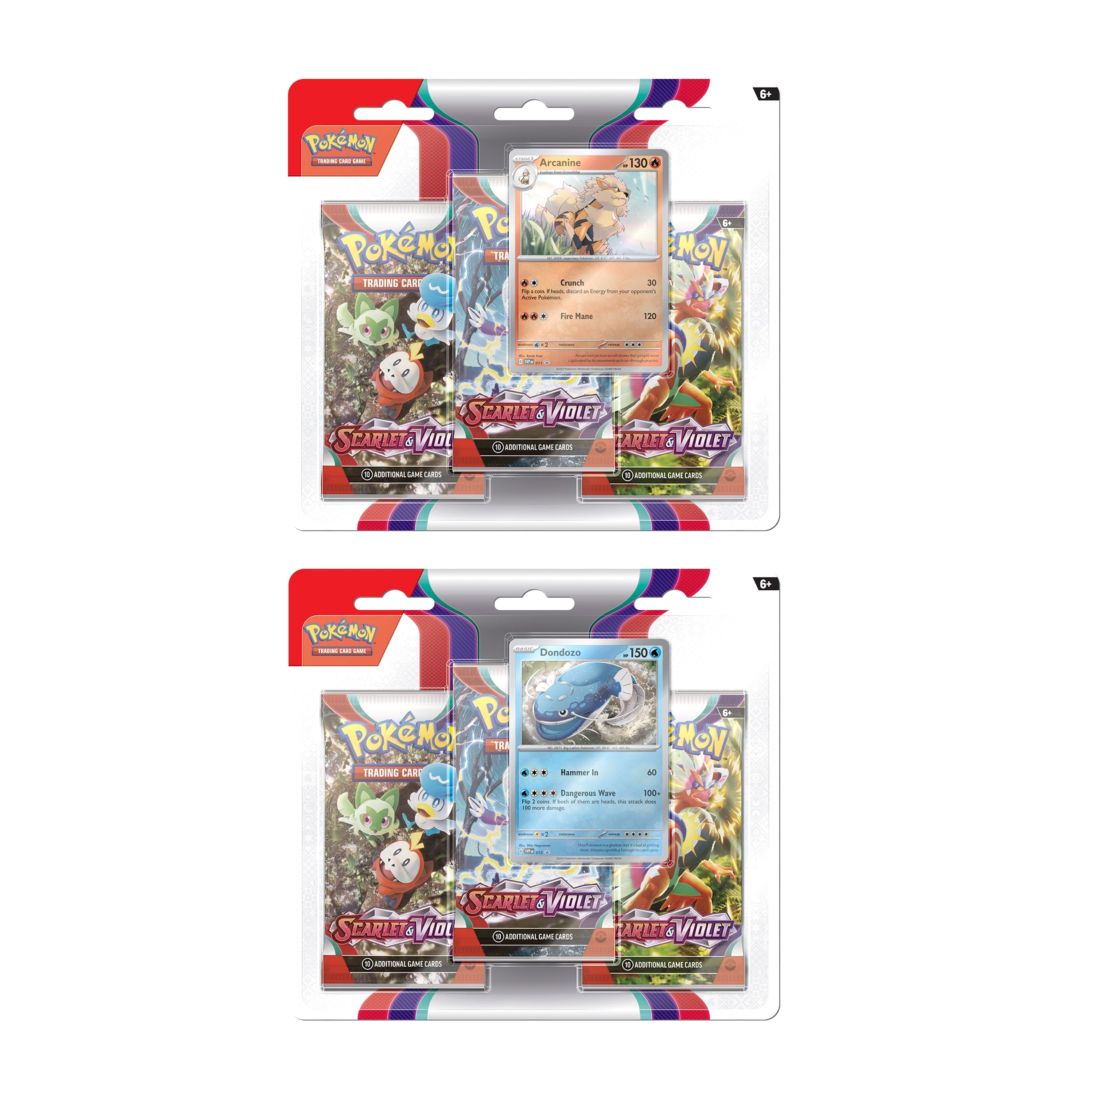 Pokémon TCG Scarlet & Violet SV01 Blister Pack (Pack of 3) (Assortment - Includes 1)